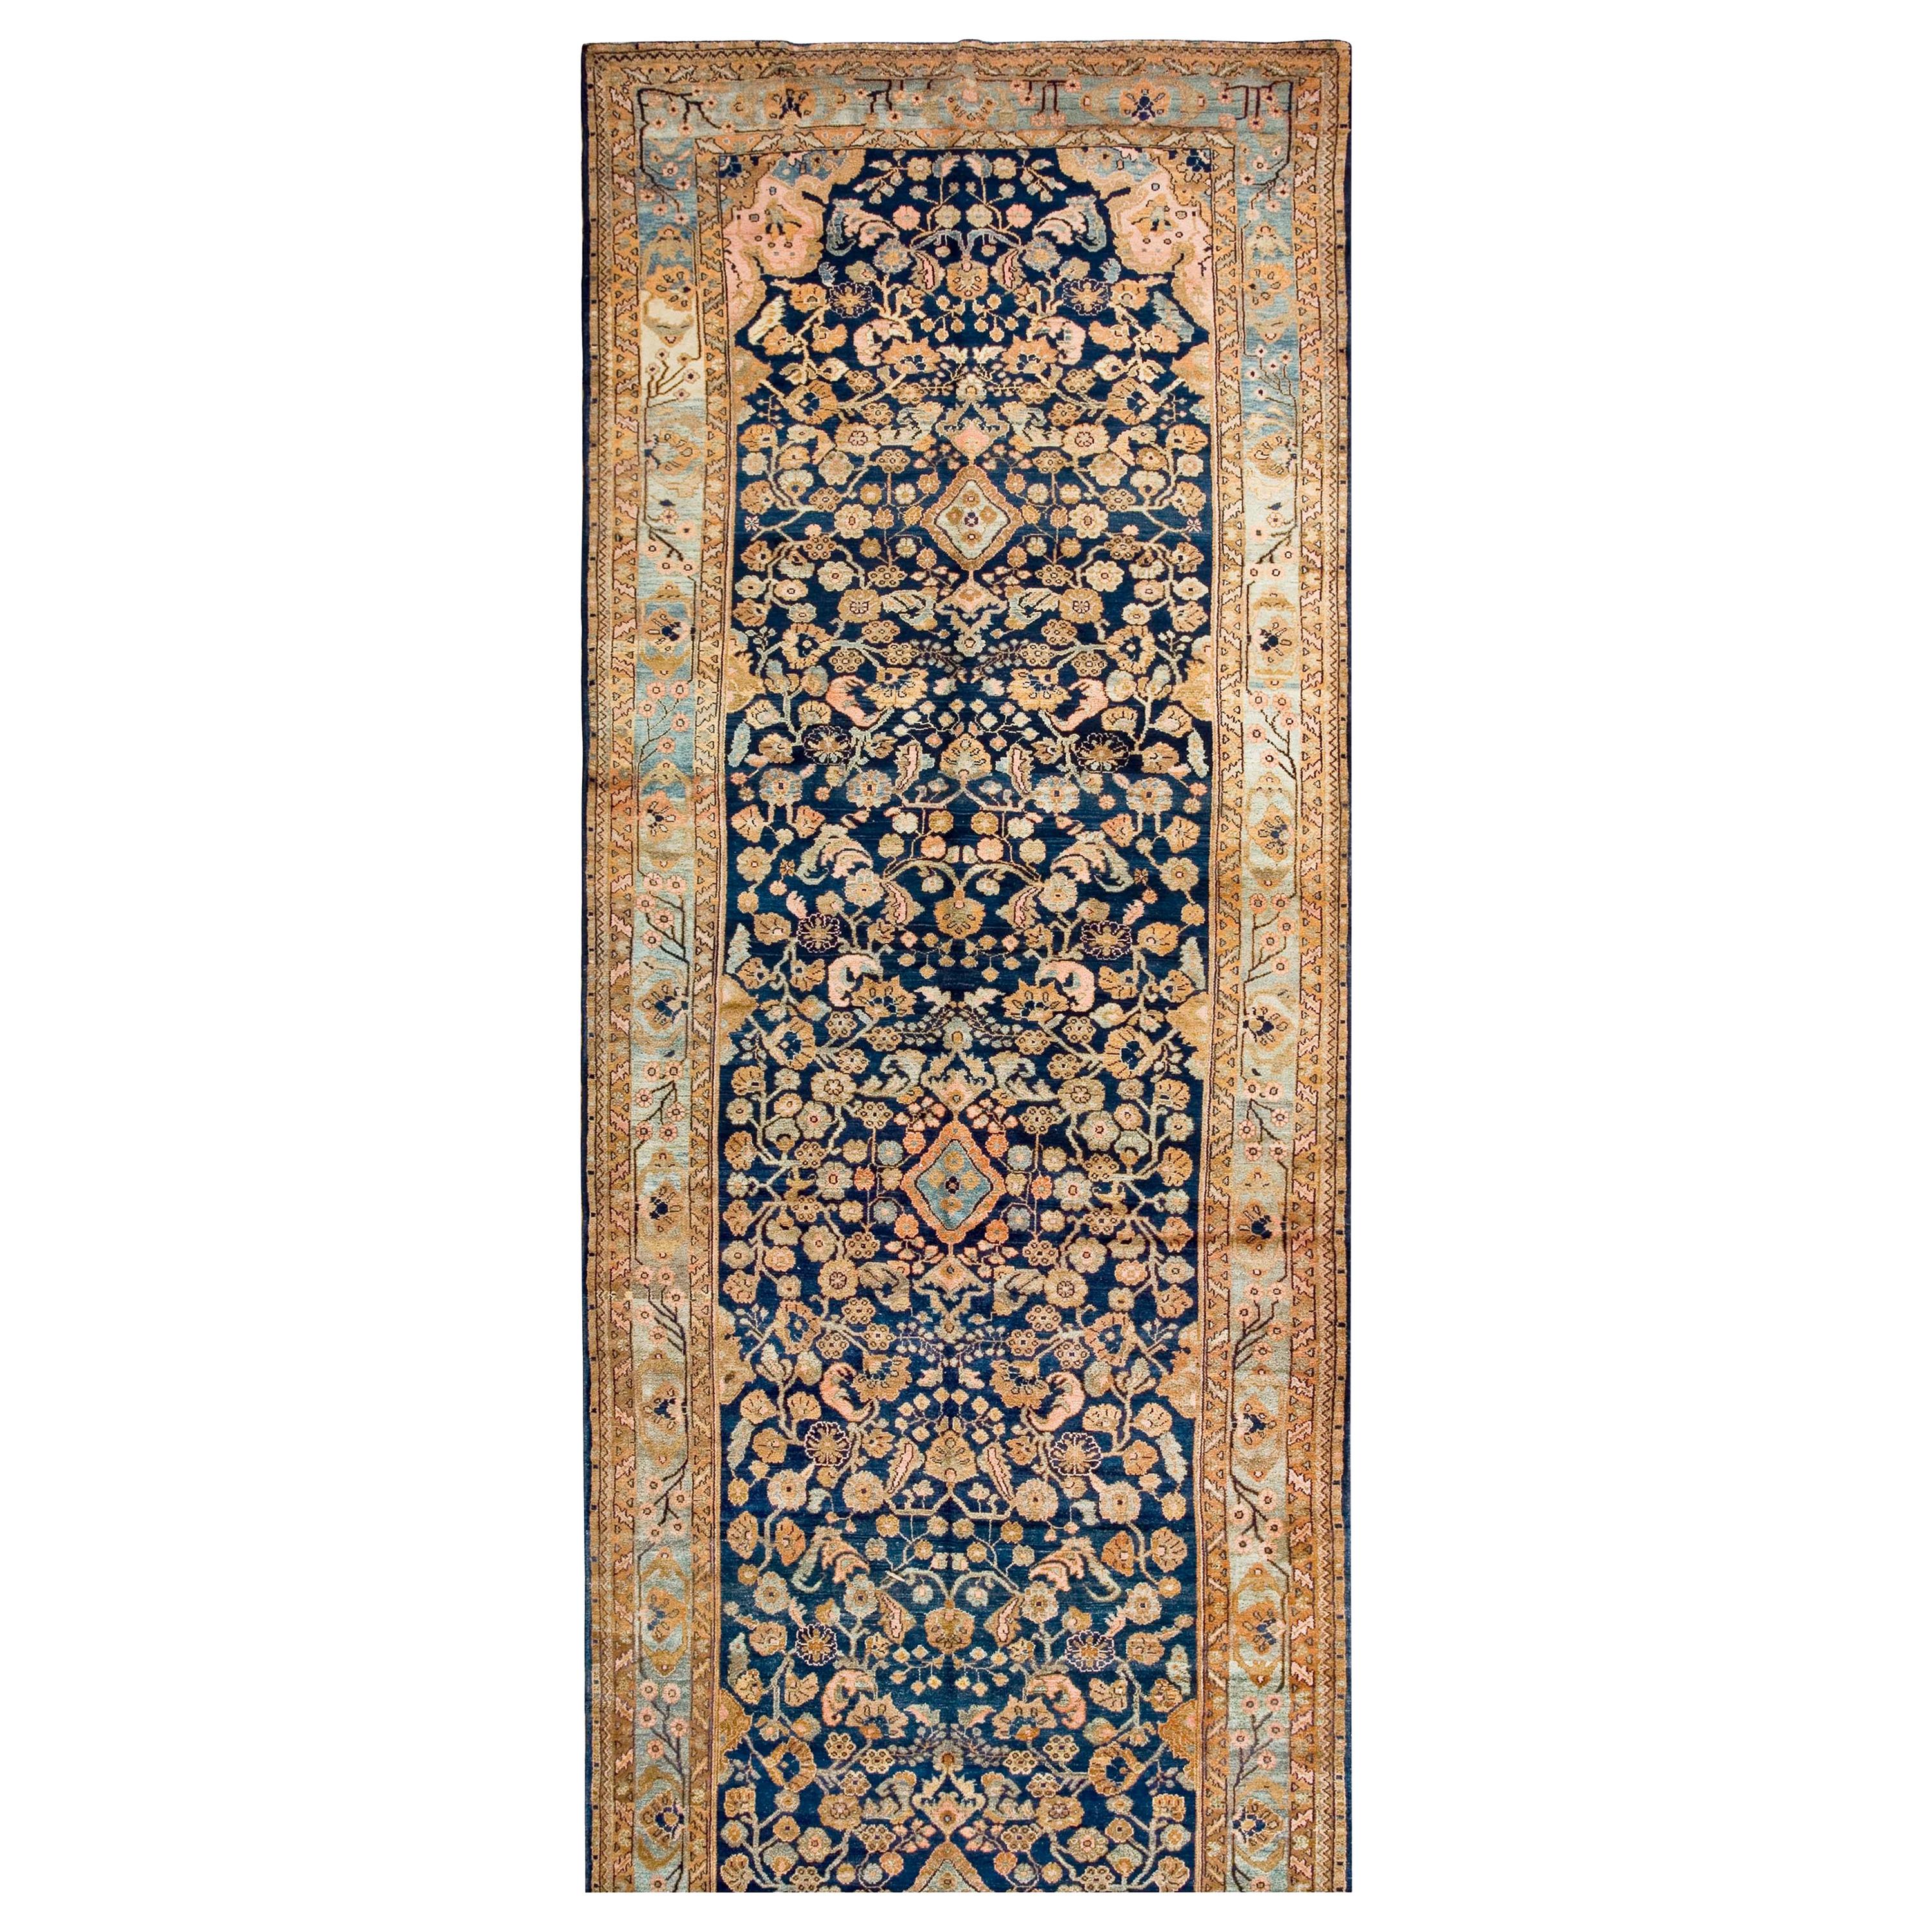 Persischer Malayer-Galerie-Teppich des frühen 20. Jahrhunderts ( 6'6" x 20'9" - 198 x 632")